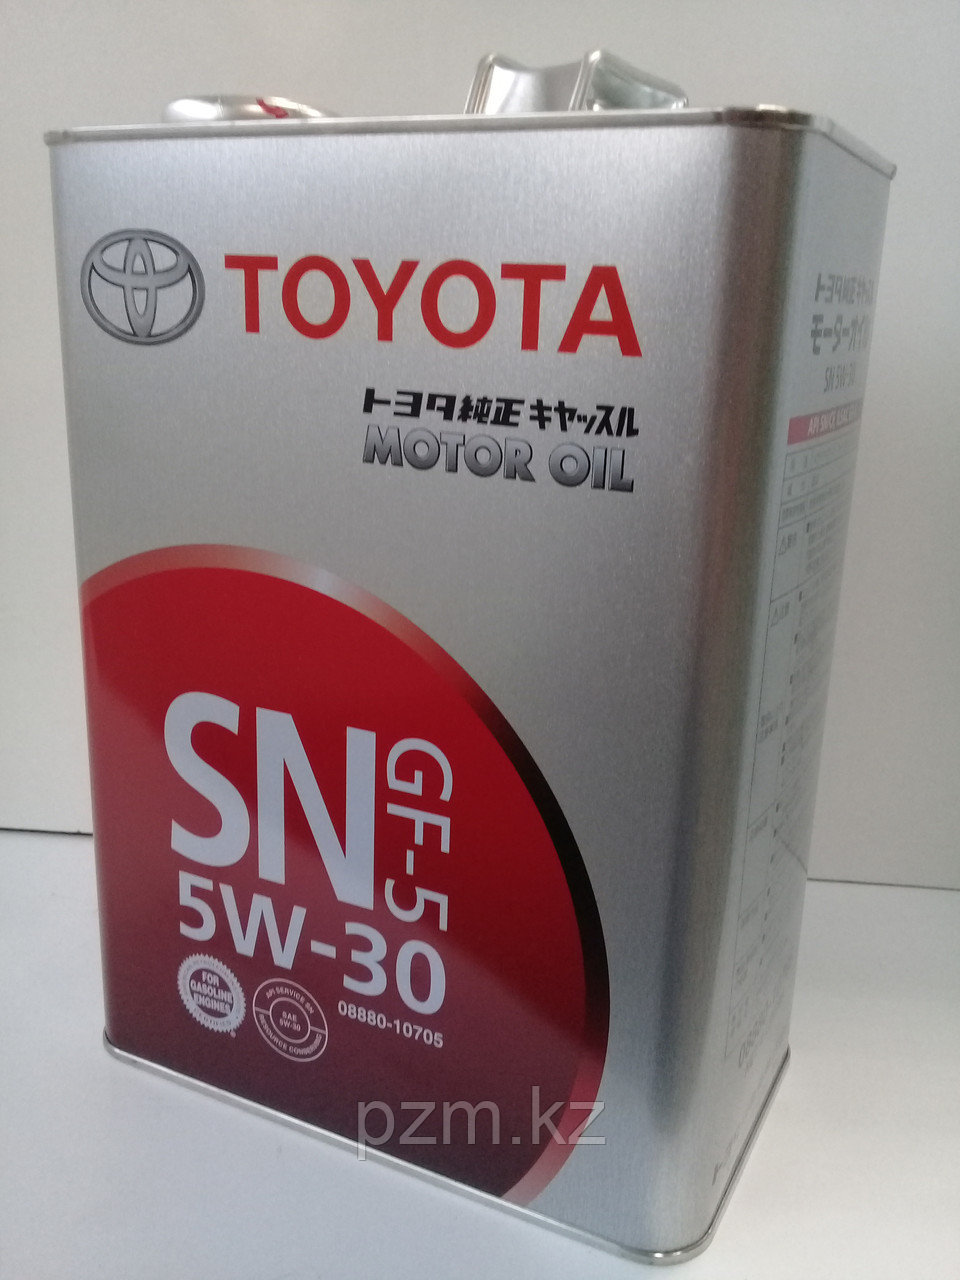 Замена масла в двигателе Toyota Highlander 2.4 (масло + фильтр)  оригинальное моторное масло тойота 5W30